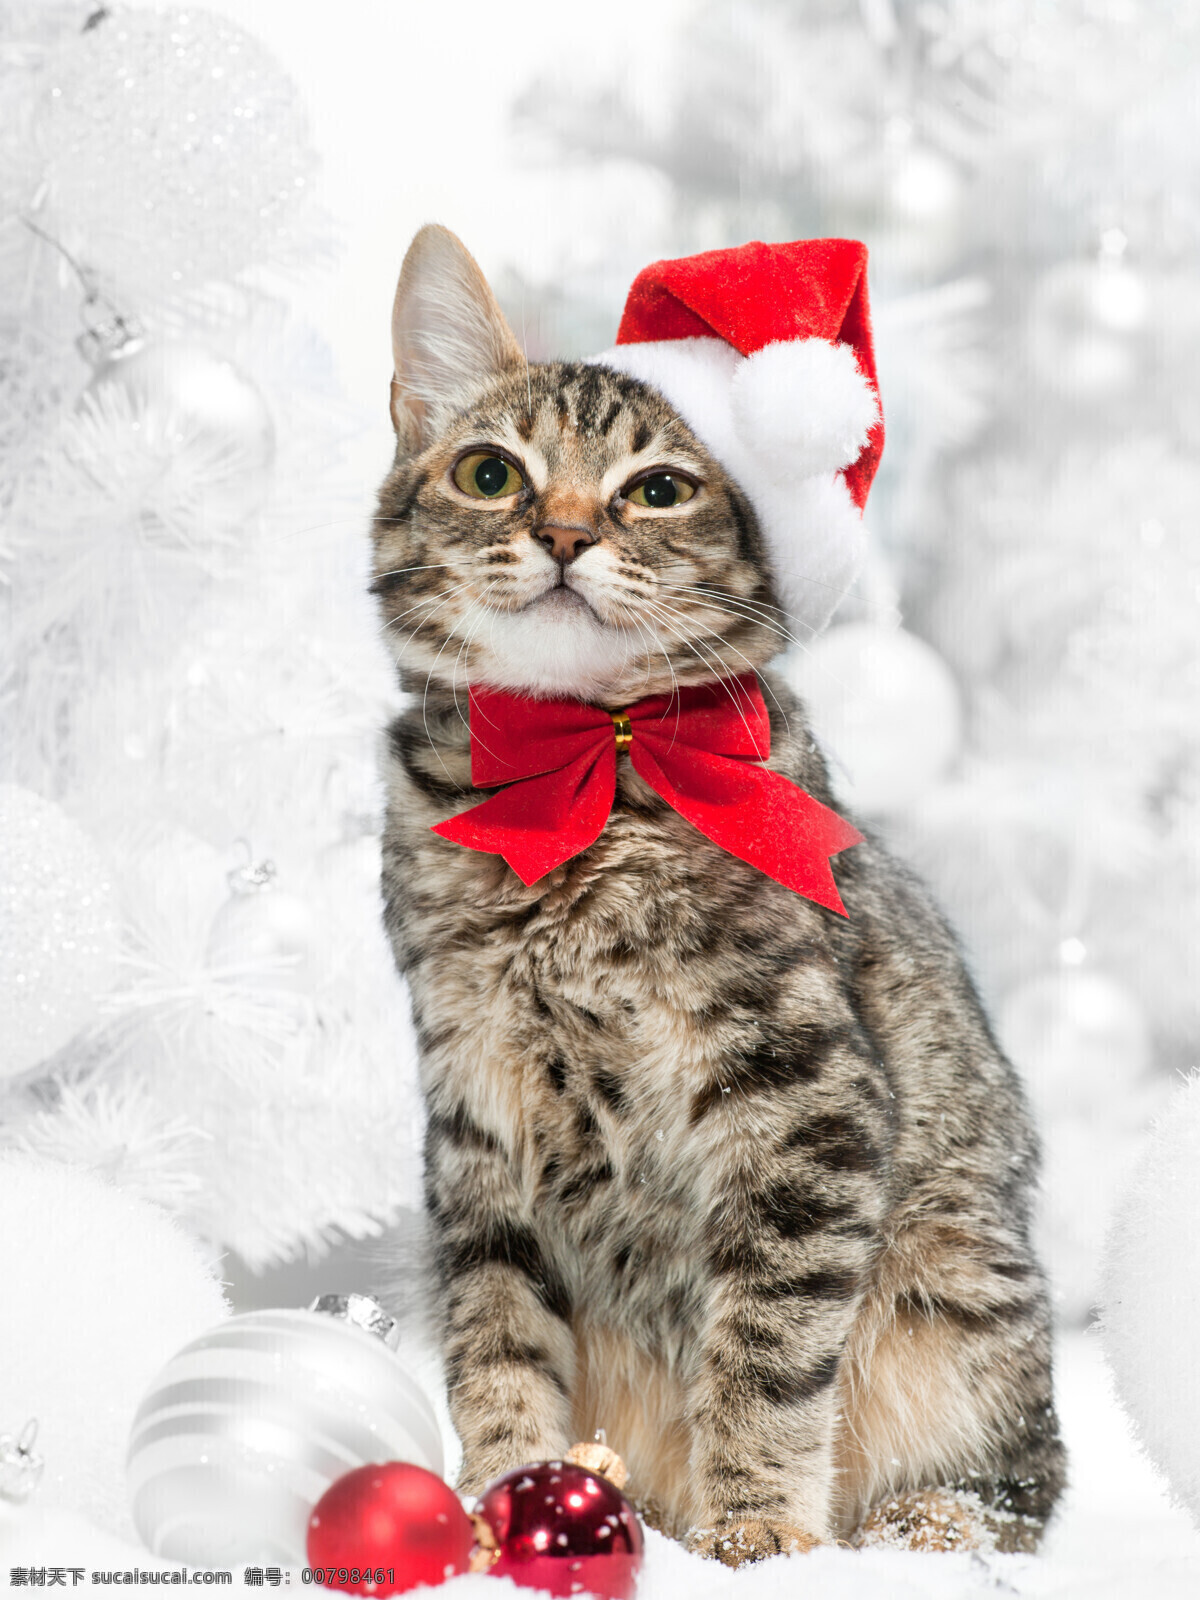 戴帽子 可爱 猫咪 可爱猫咪 动物 圣诞吊球 彩球 蝴蝶结 节日素材 猫咪图片 生物世界